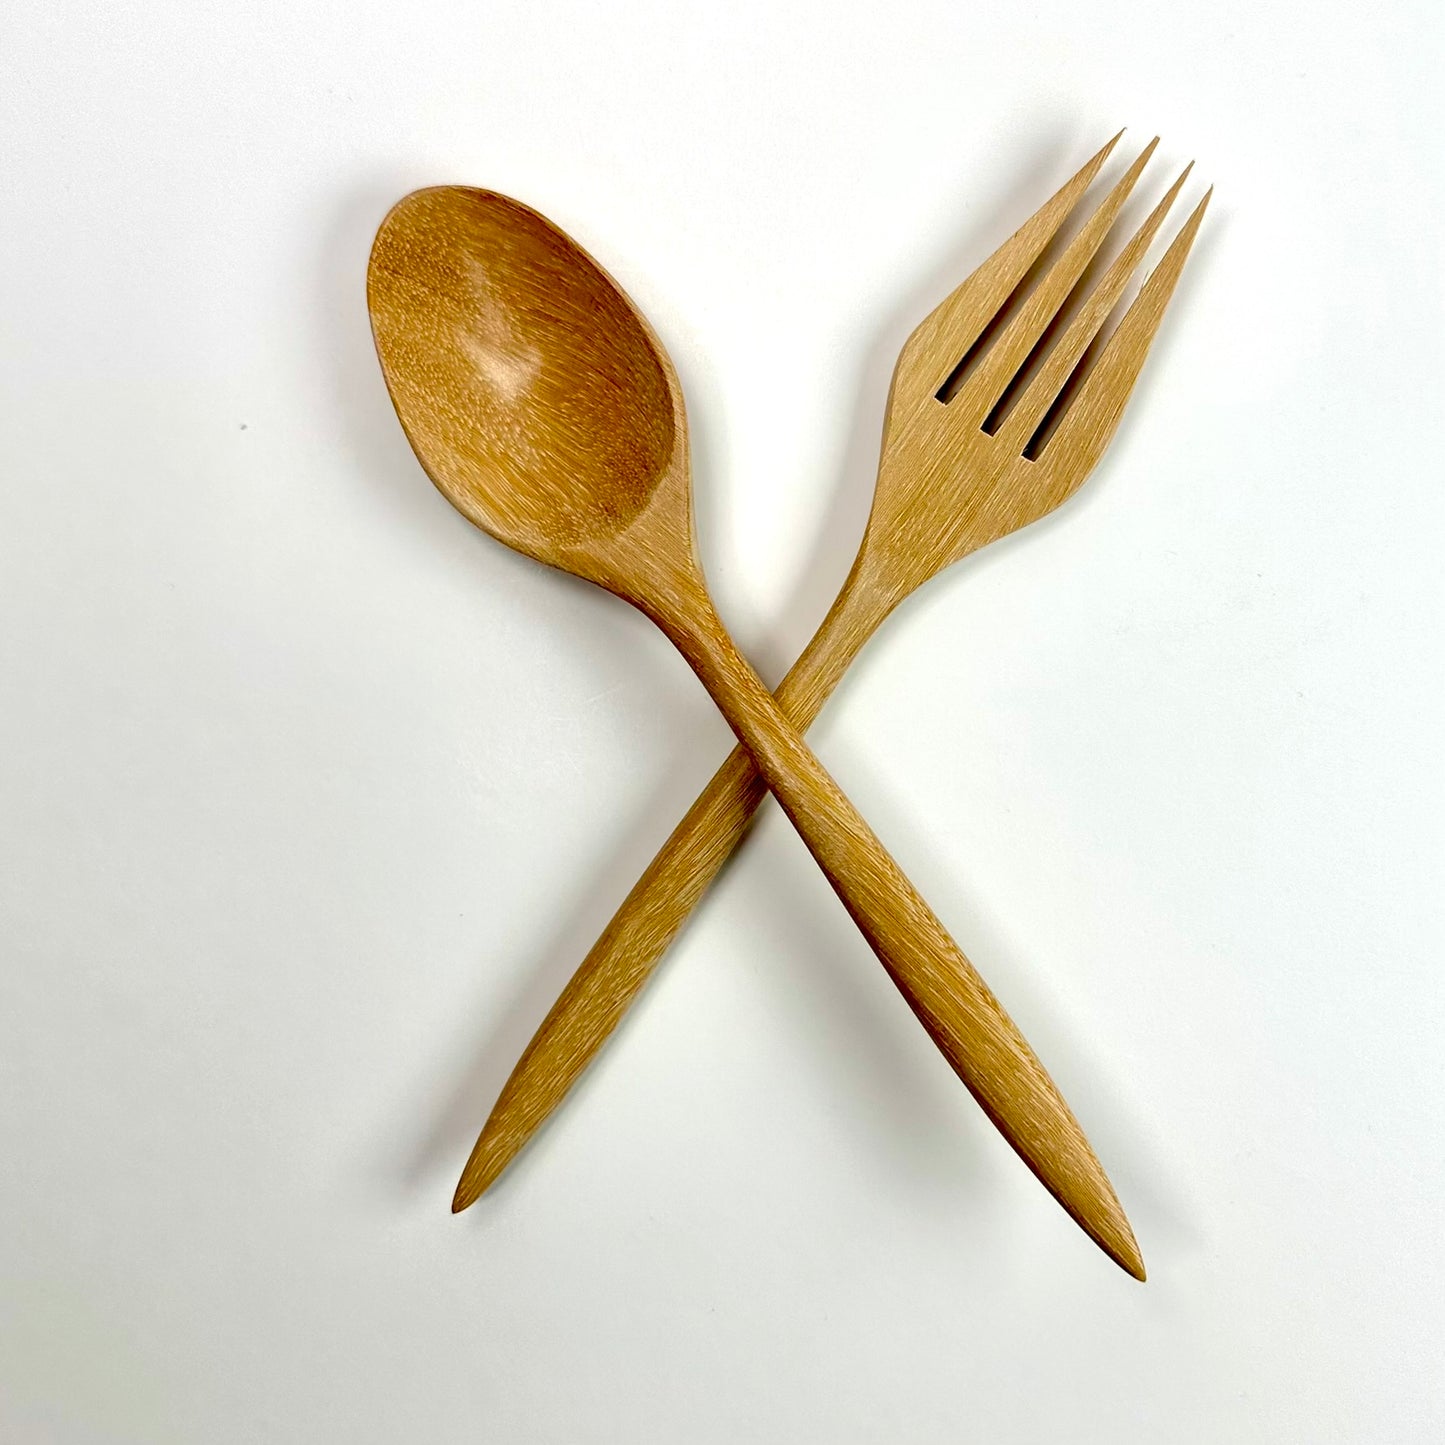  Mango wood cutlery